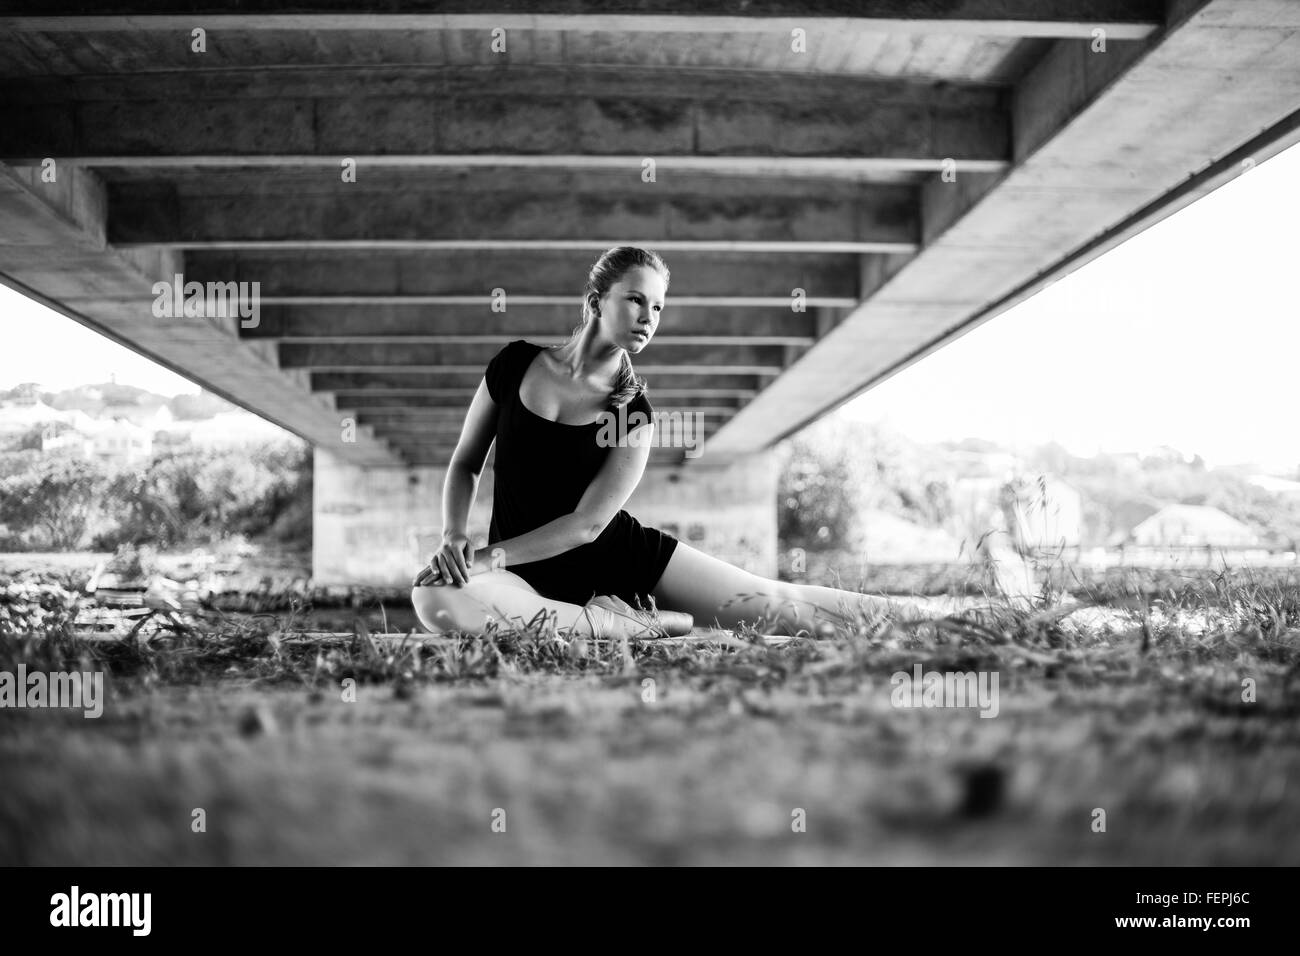 Eine schöne junge Ballerina posiert unter einer Brücke mit dem Fluss hinter ihr viele schöne führenden Linien für bildende Kunst Stockfoto